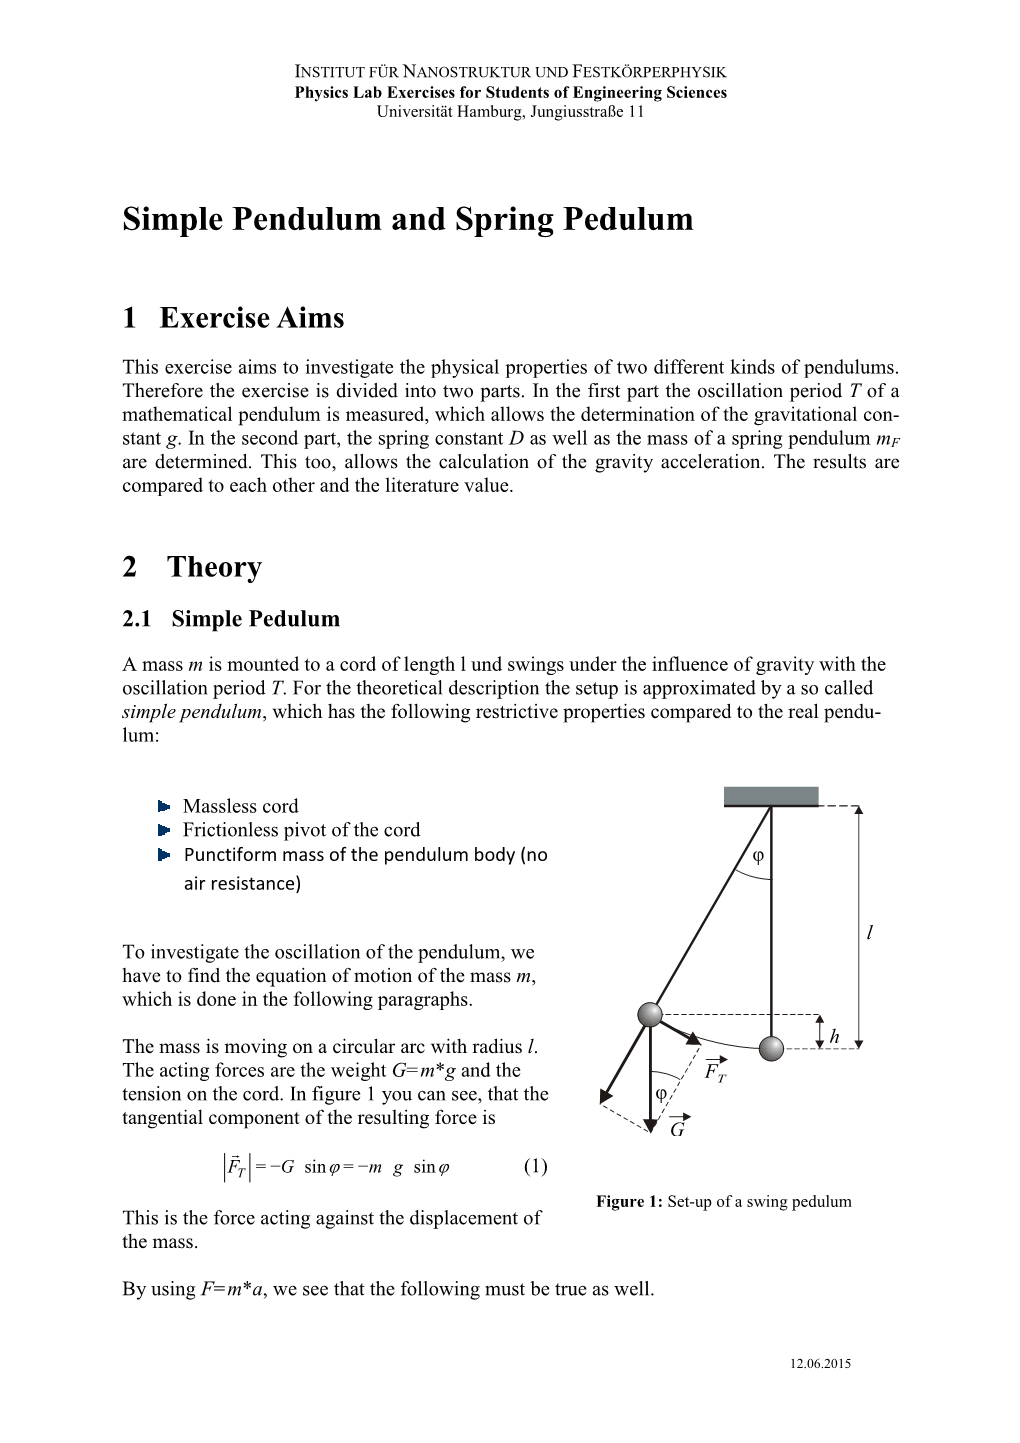 Simple Pendulum and Spring Pedulum